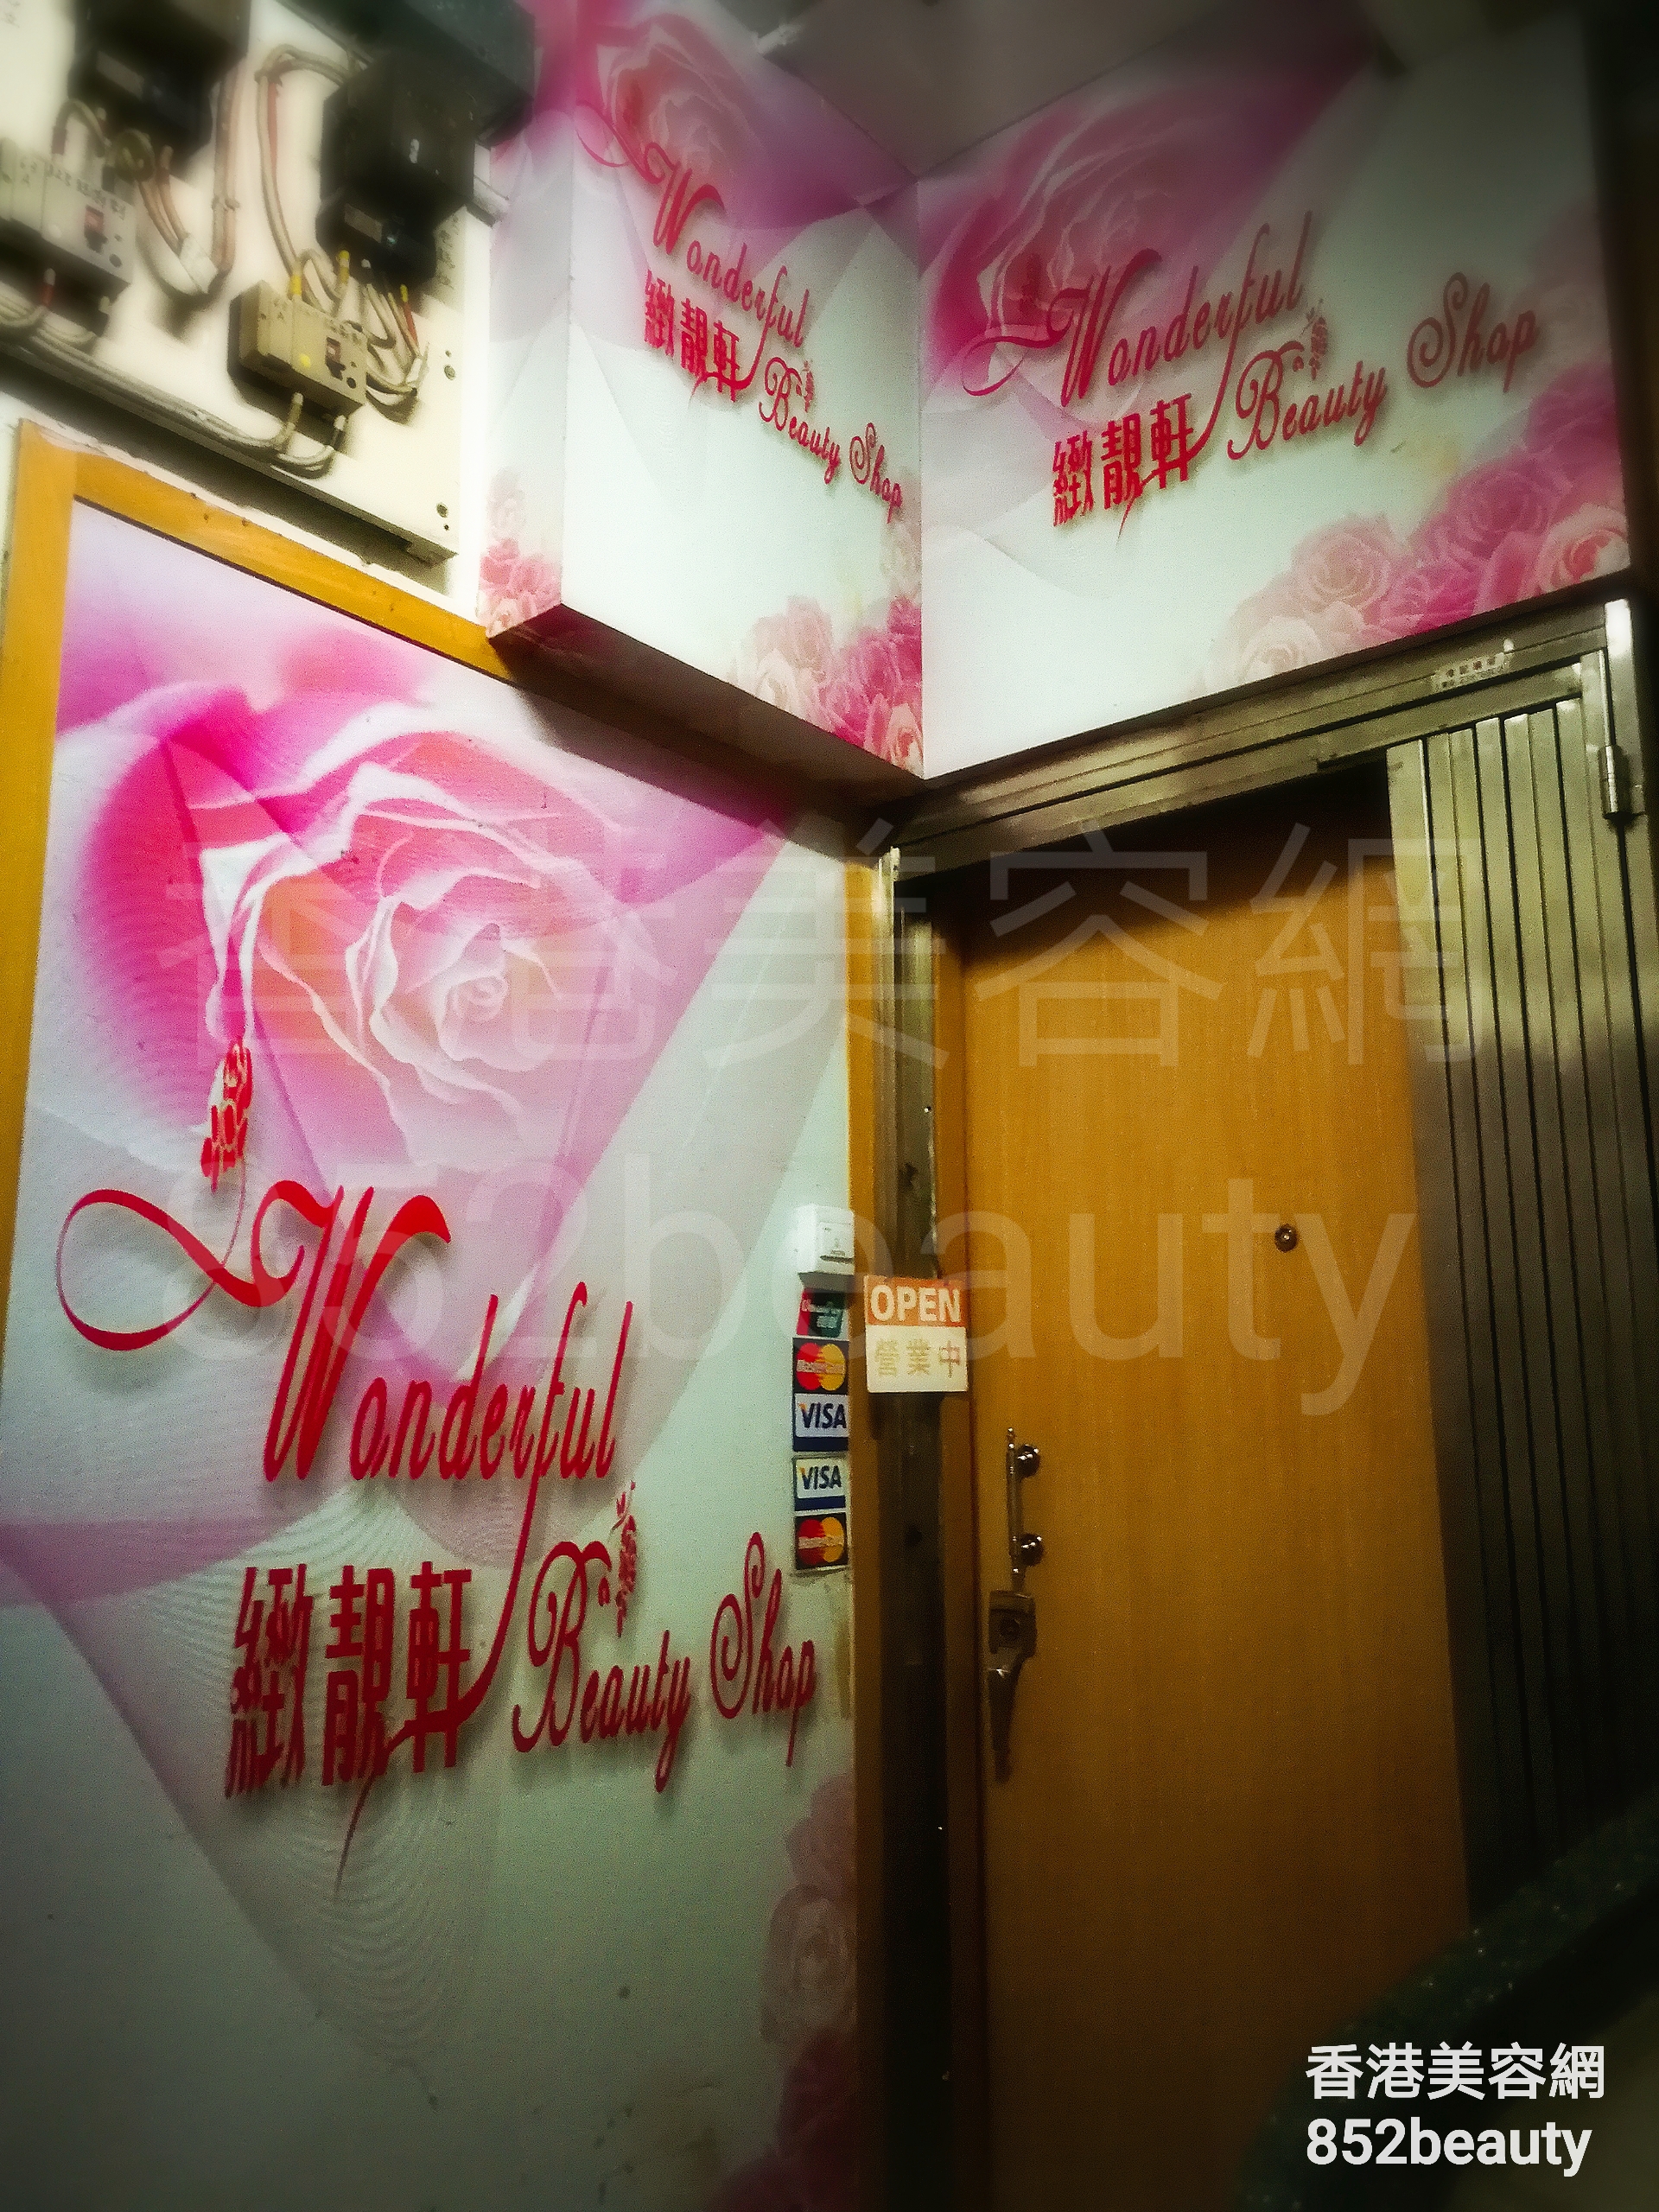 香港美容網 Hong Kong Beauty Salon 美容院 / 美容師: 緻靚軒 Wonderful Beauty Shop